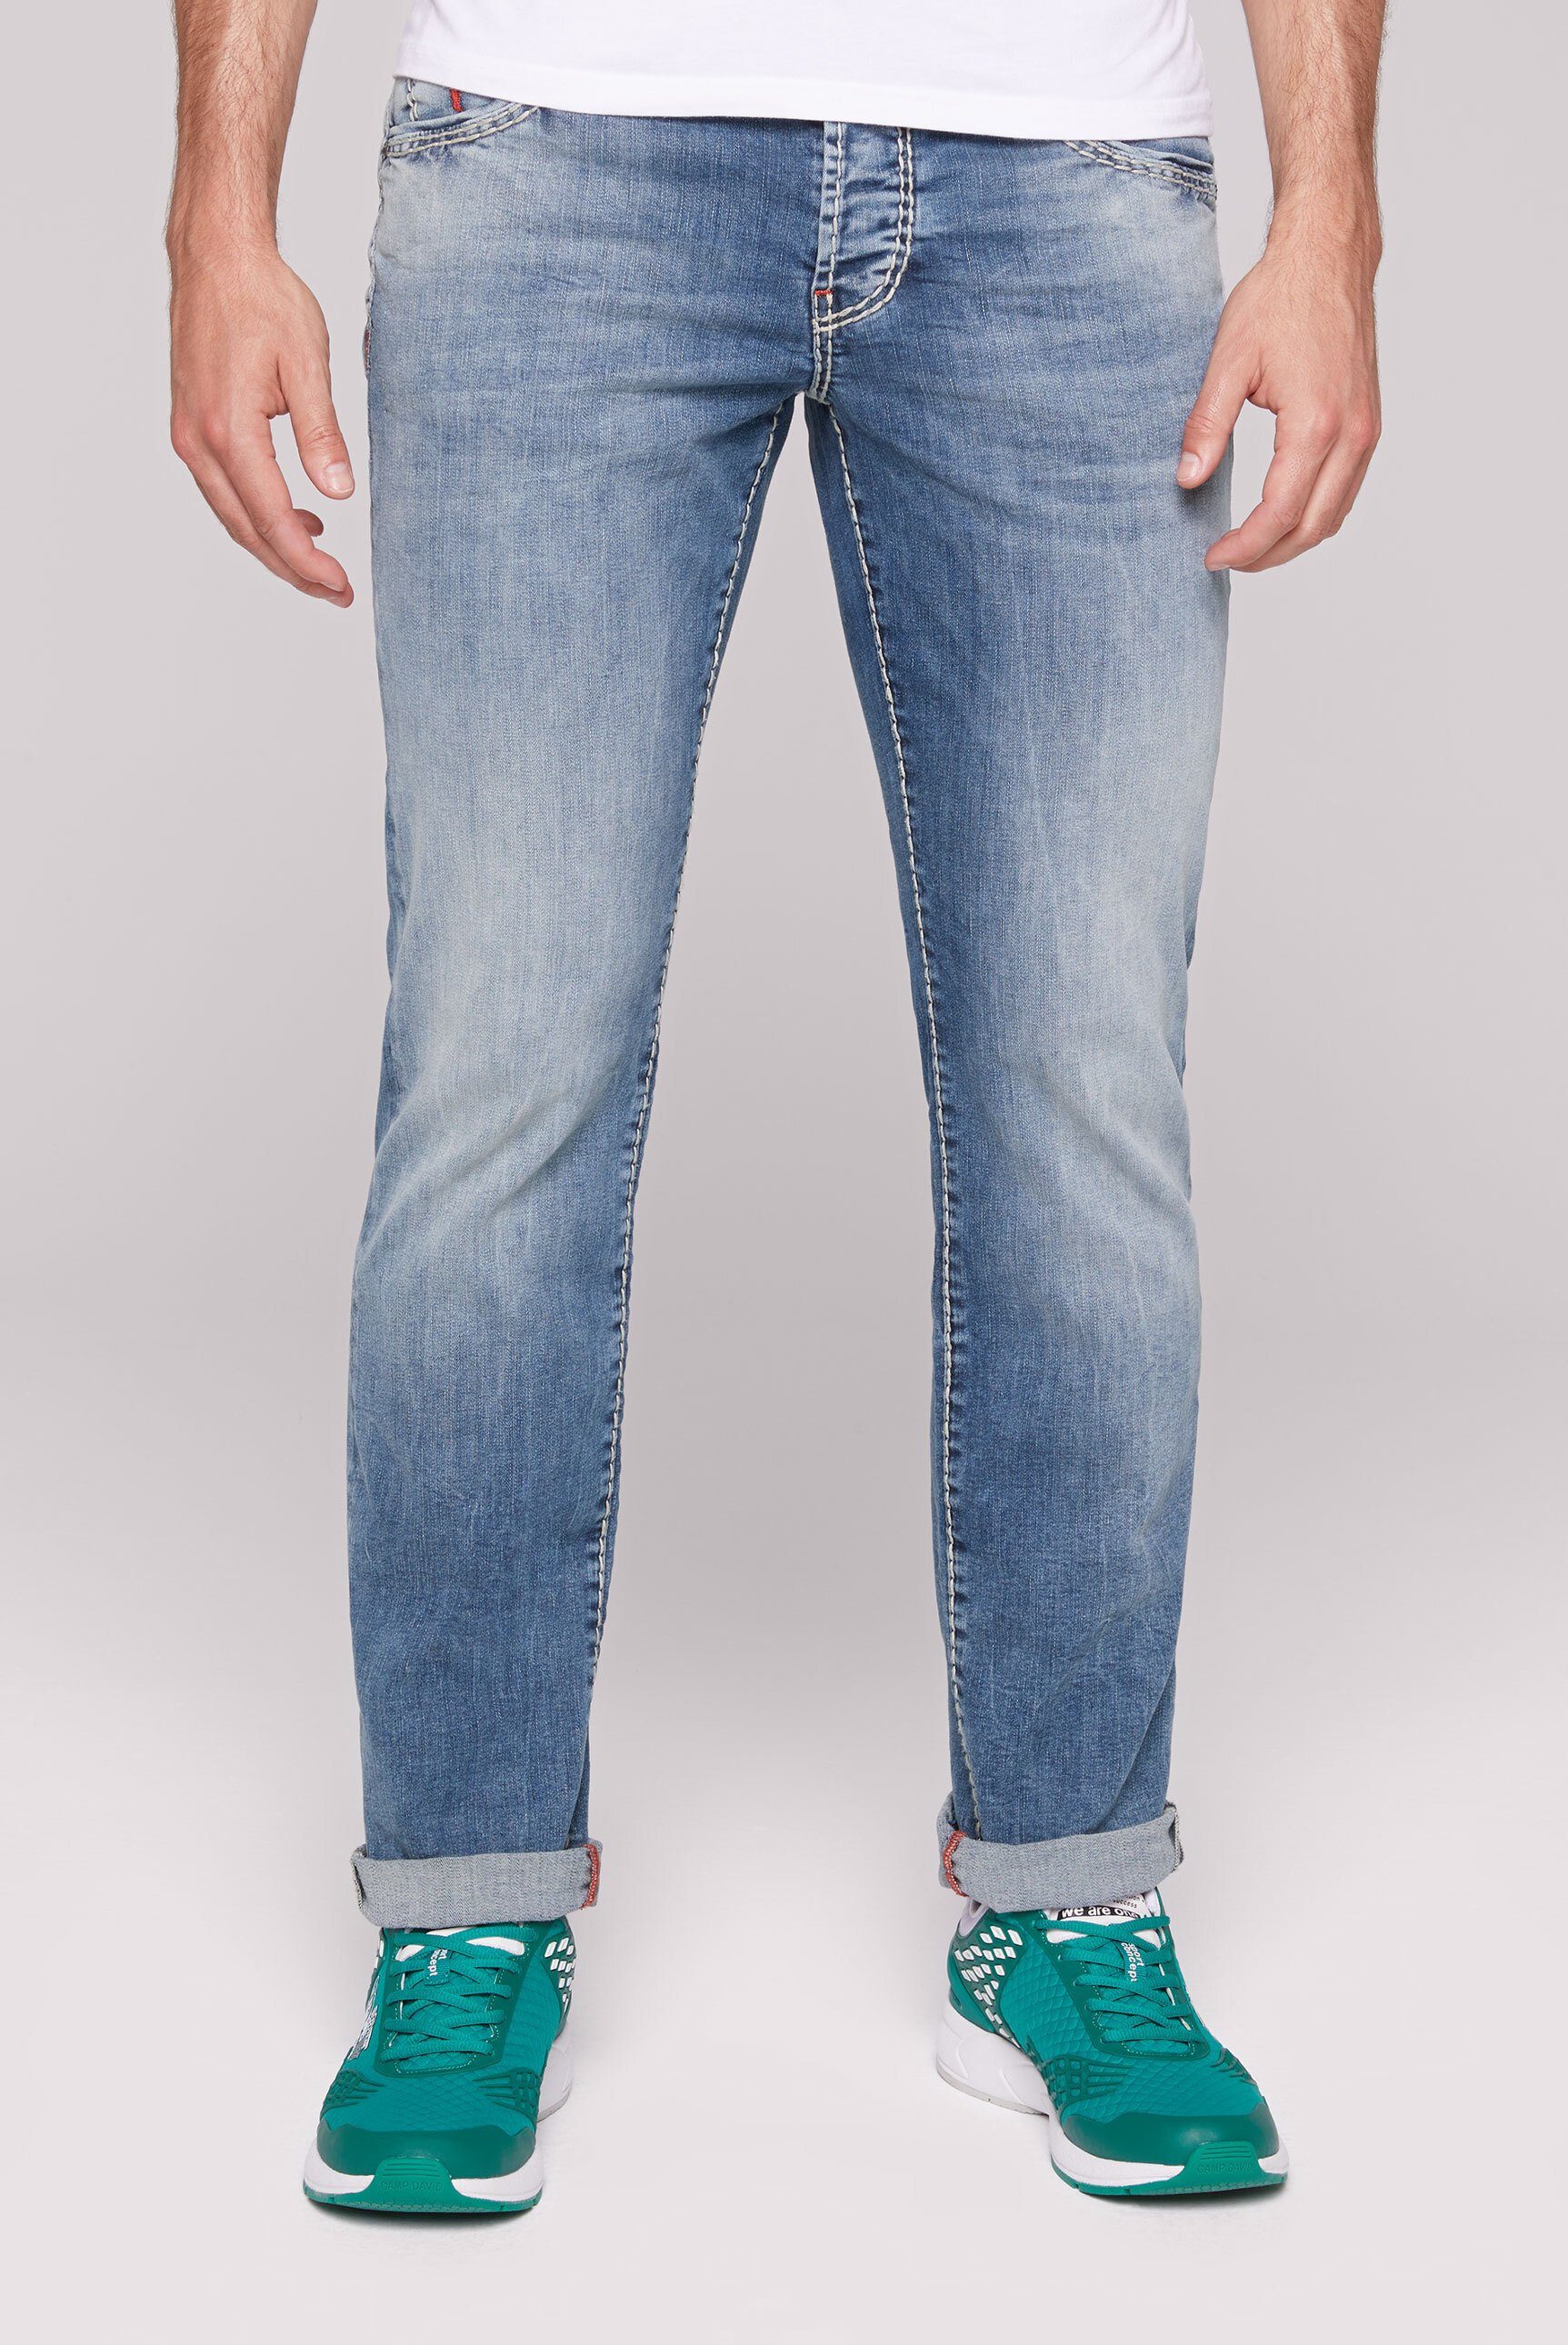 Günstige Camp David Jeans Herren online kaufen | OTTO